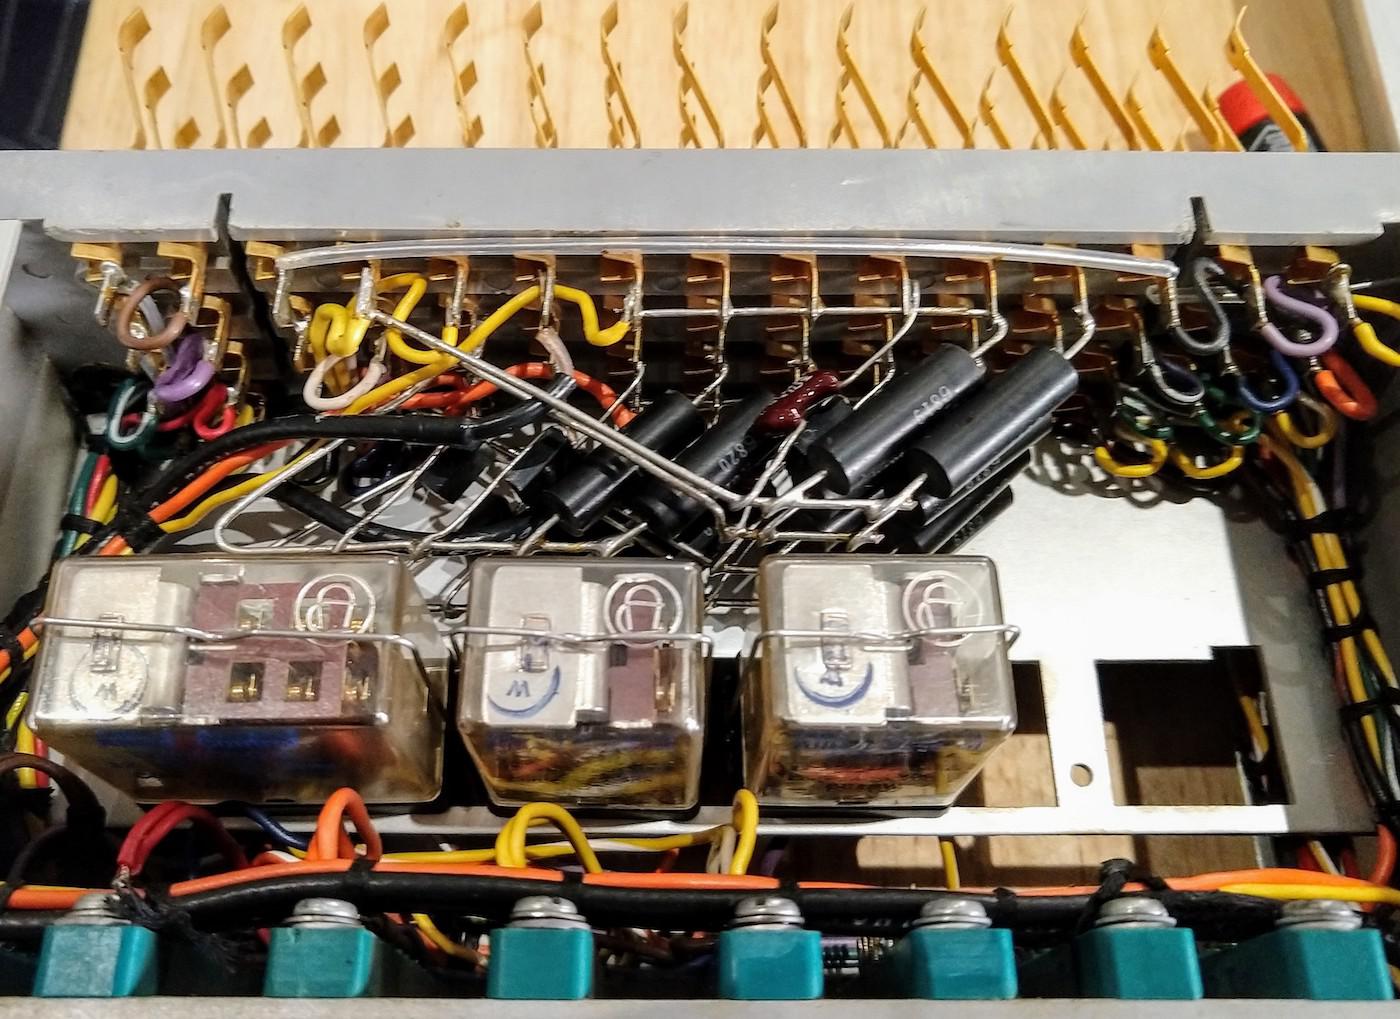 Реверс-инжиниринг малошумящих операционных усилителей из аналогового компьютера 1969 года - 11